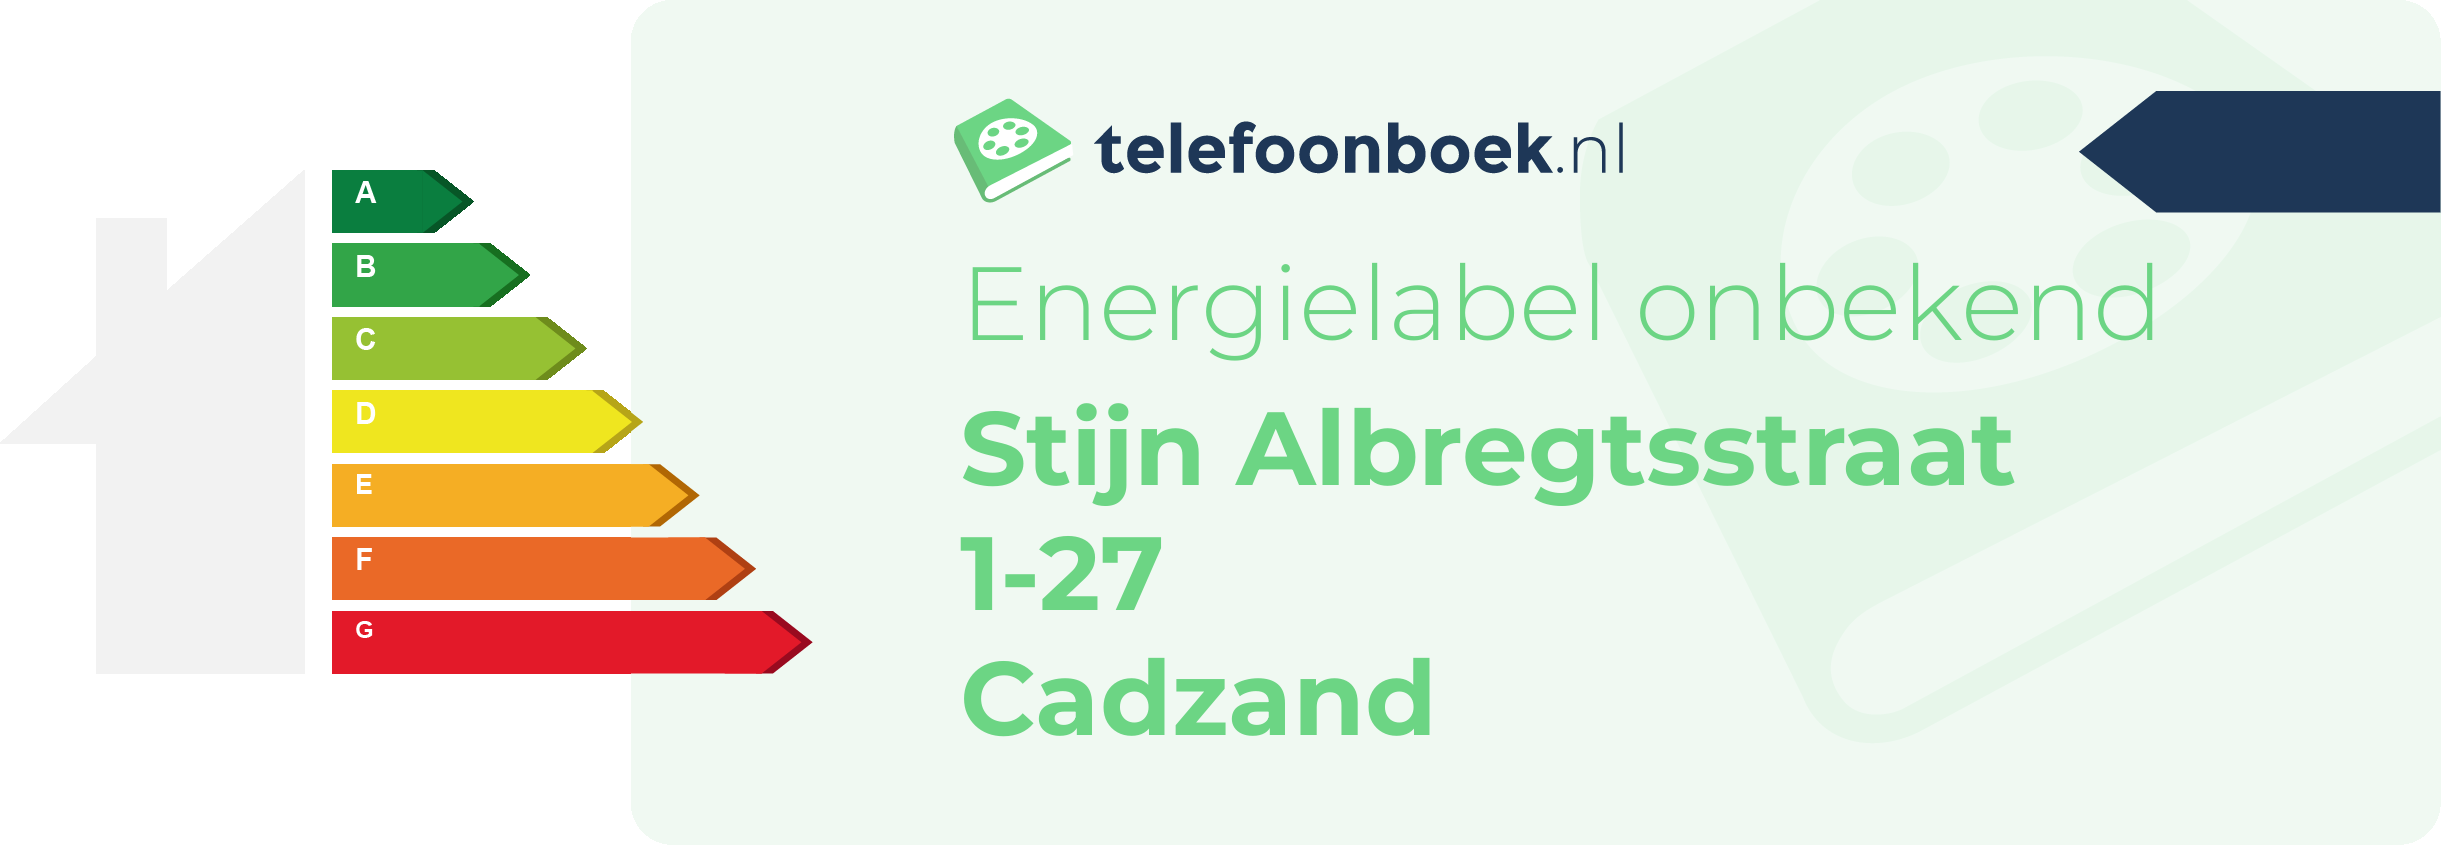 Energielabel Stijn Albregtsstraat 1-27 Cadzand